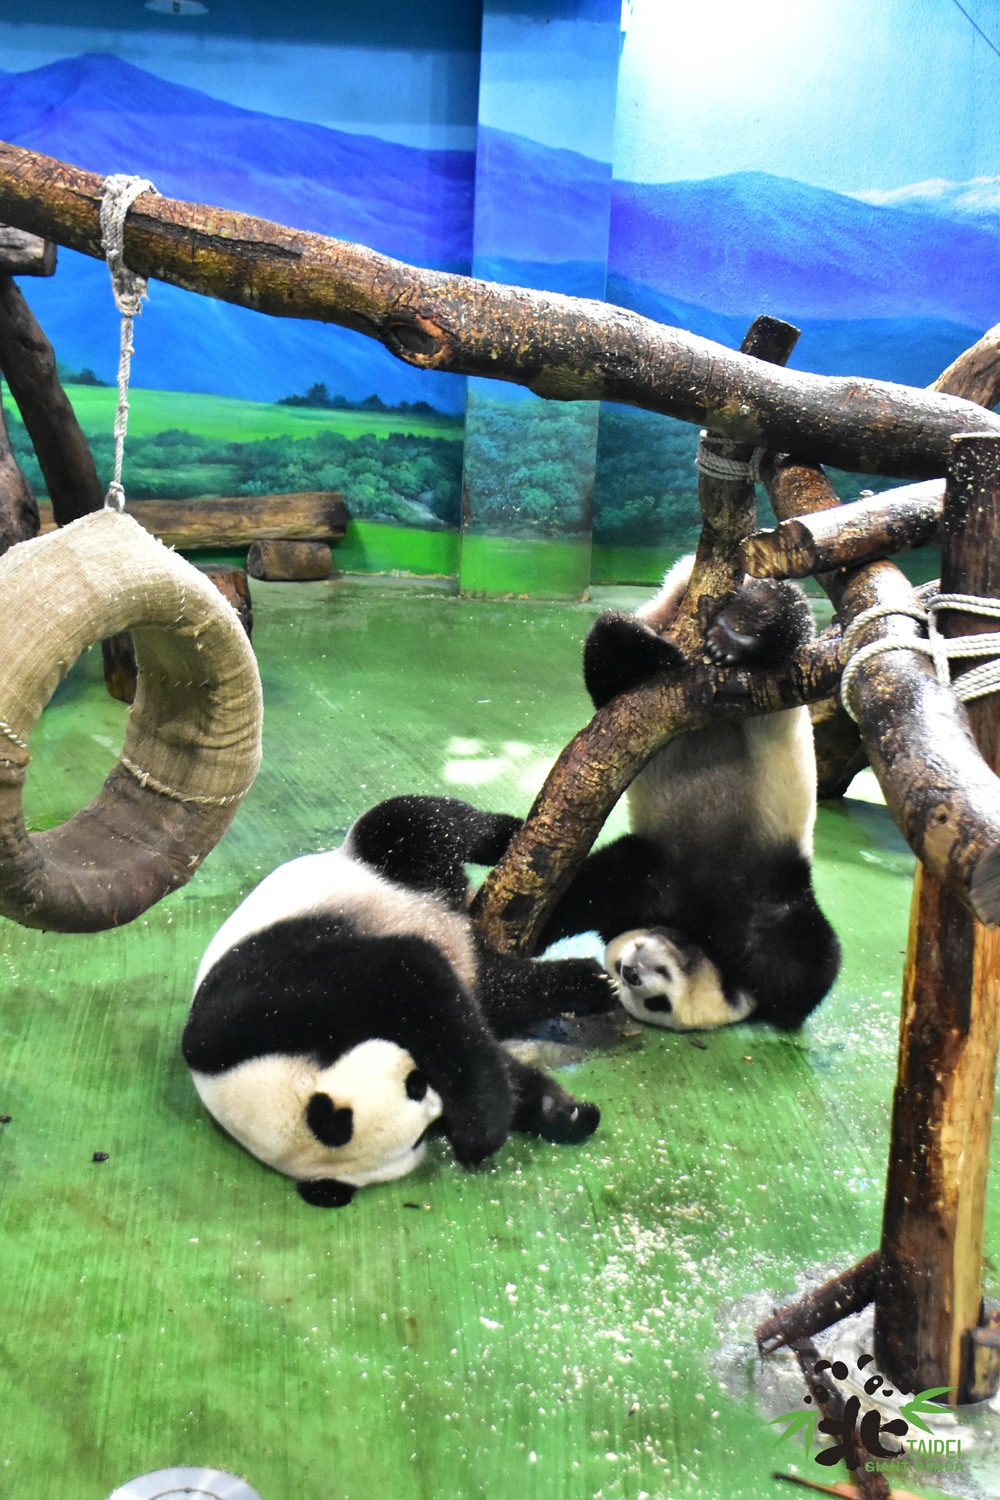 白天「圓寶」還是照常跟媽媽一起活動 / 圖文來源 台北市立動物園